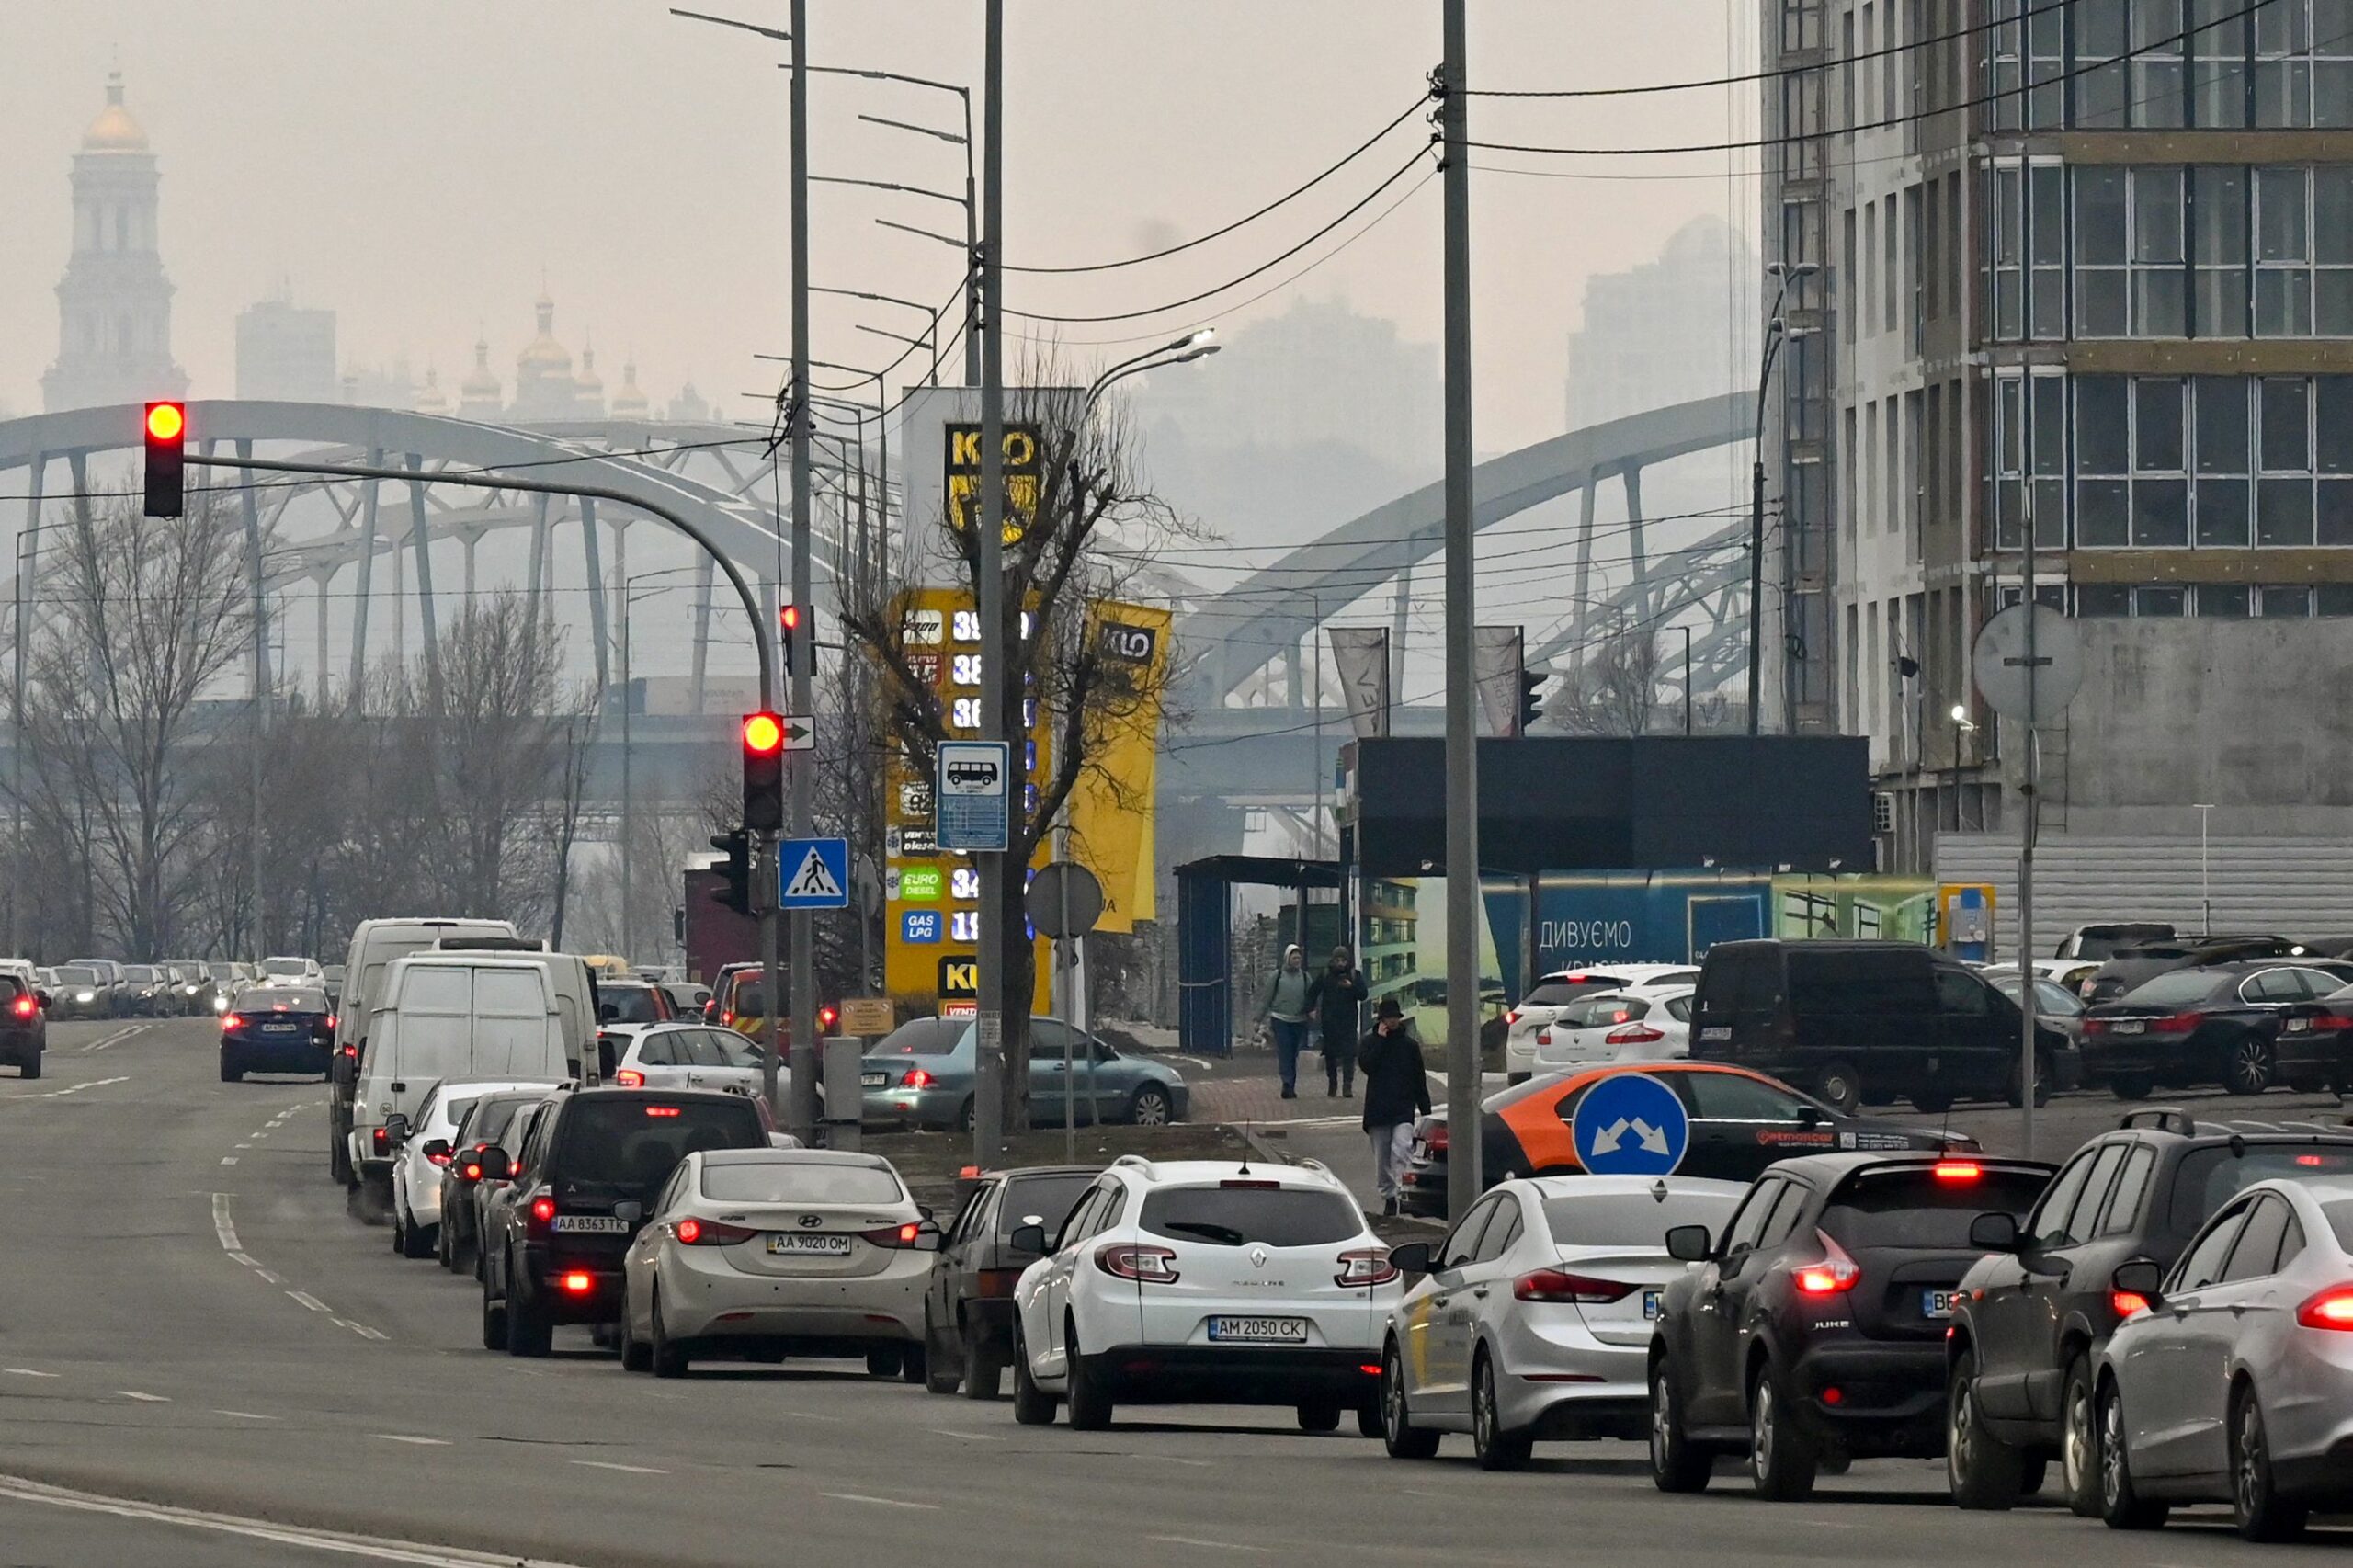 Автомобили стоят в очереди на заправку в Киеве. Фото GENYA SAVILOV / TASS / Scanpix / Leta